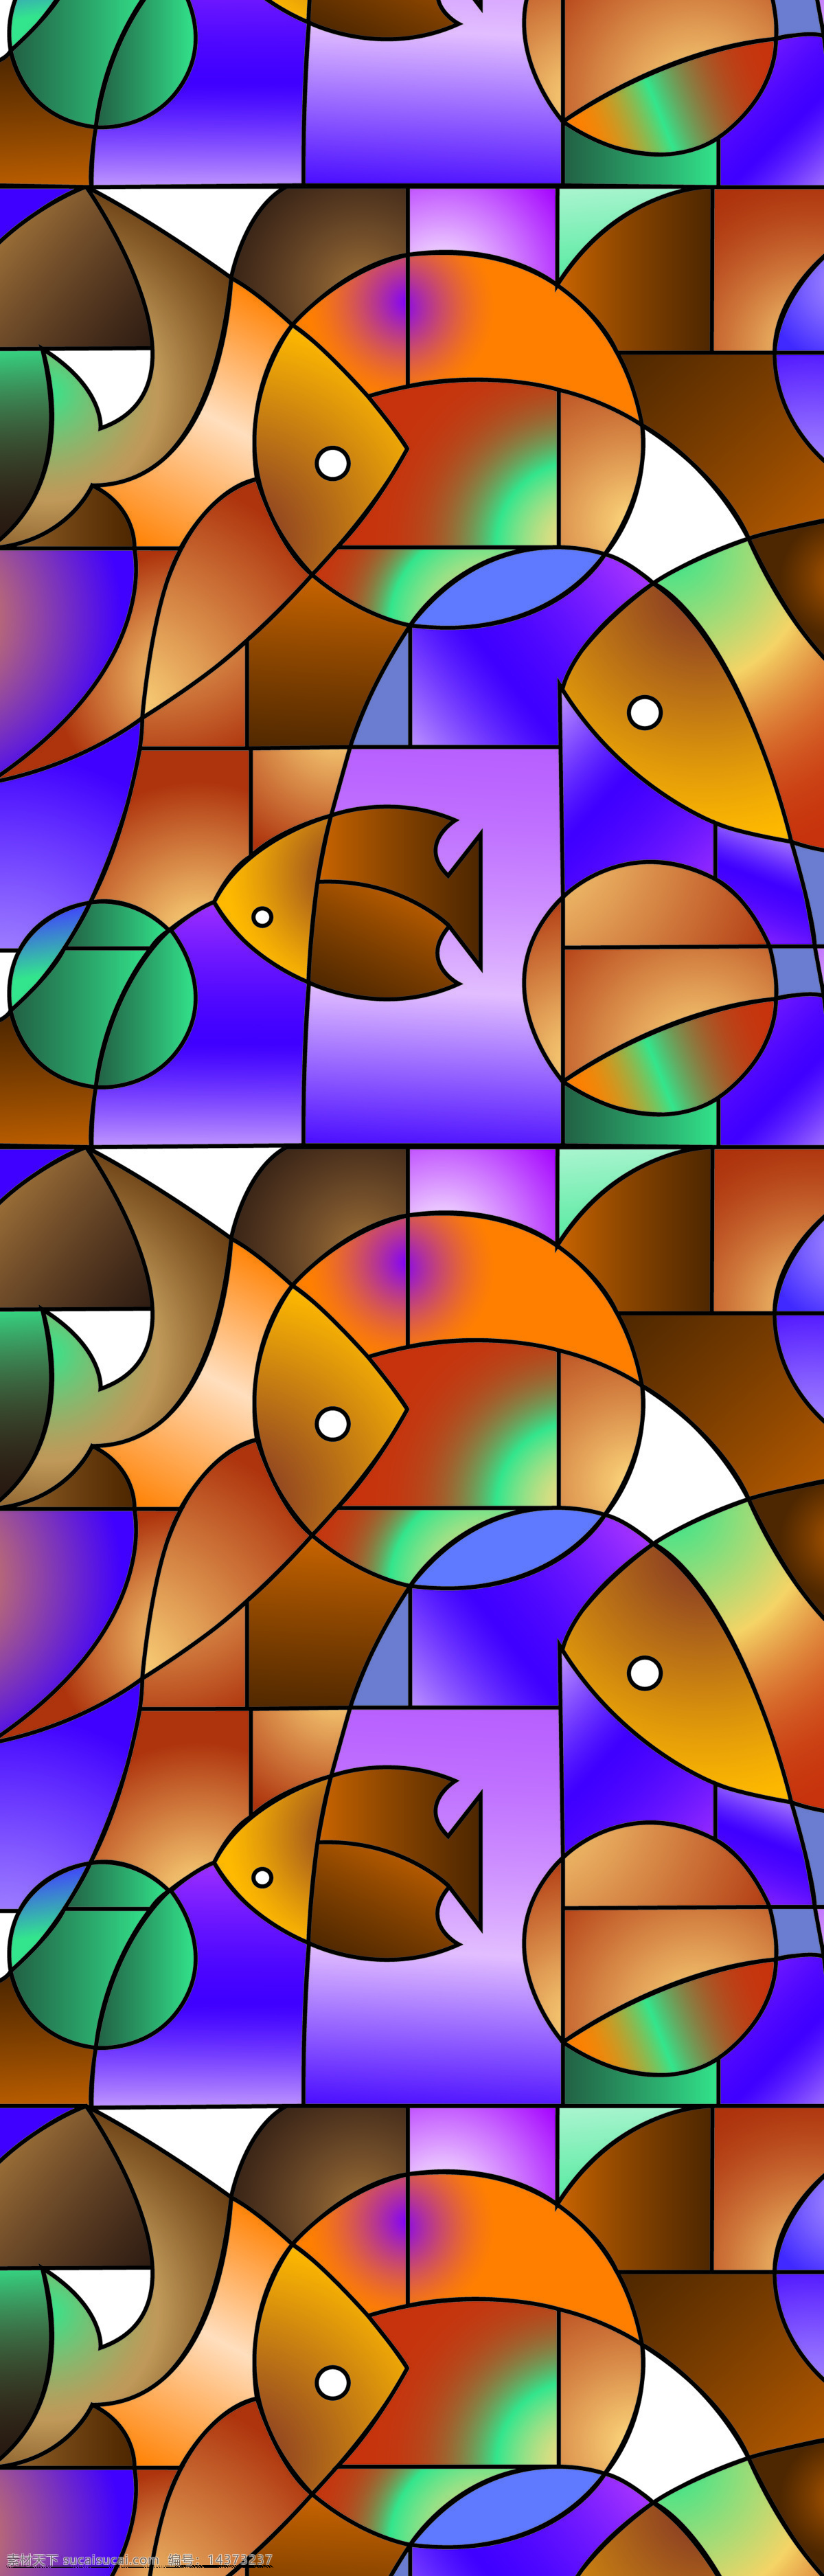 抽象鱼儿 抽象艺术 五彩 彩色 抽象 欧式背景 位图移门 背景底纹 底纹边框